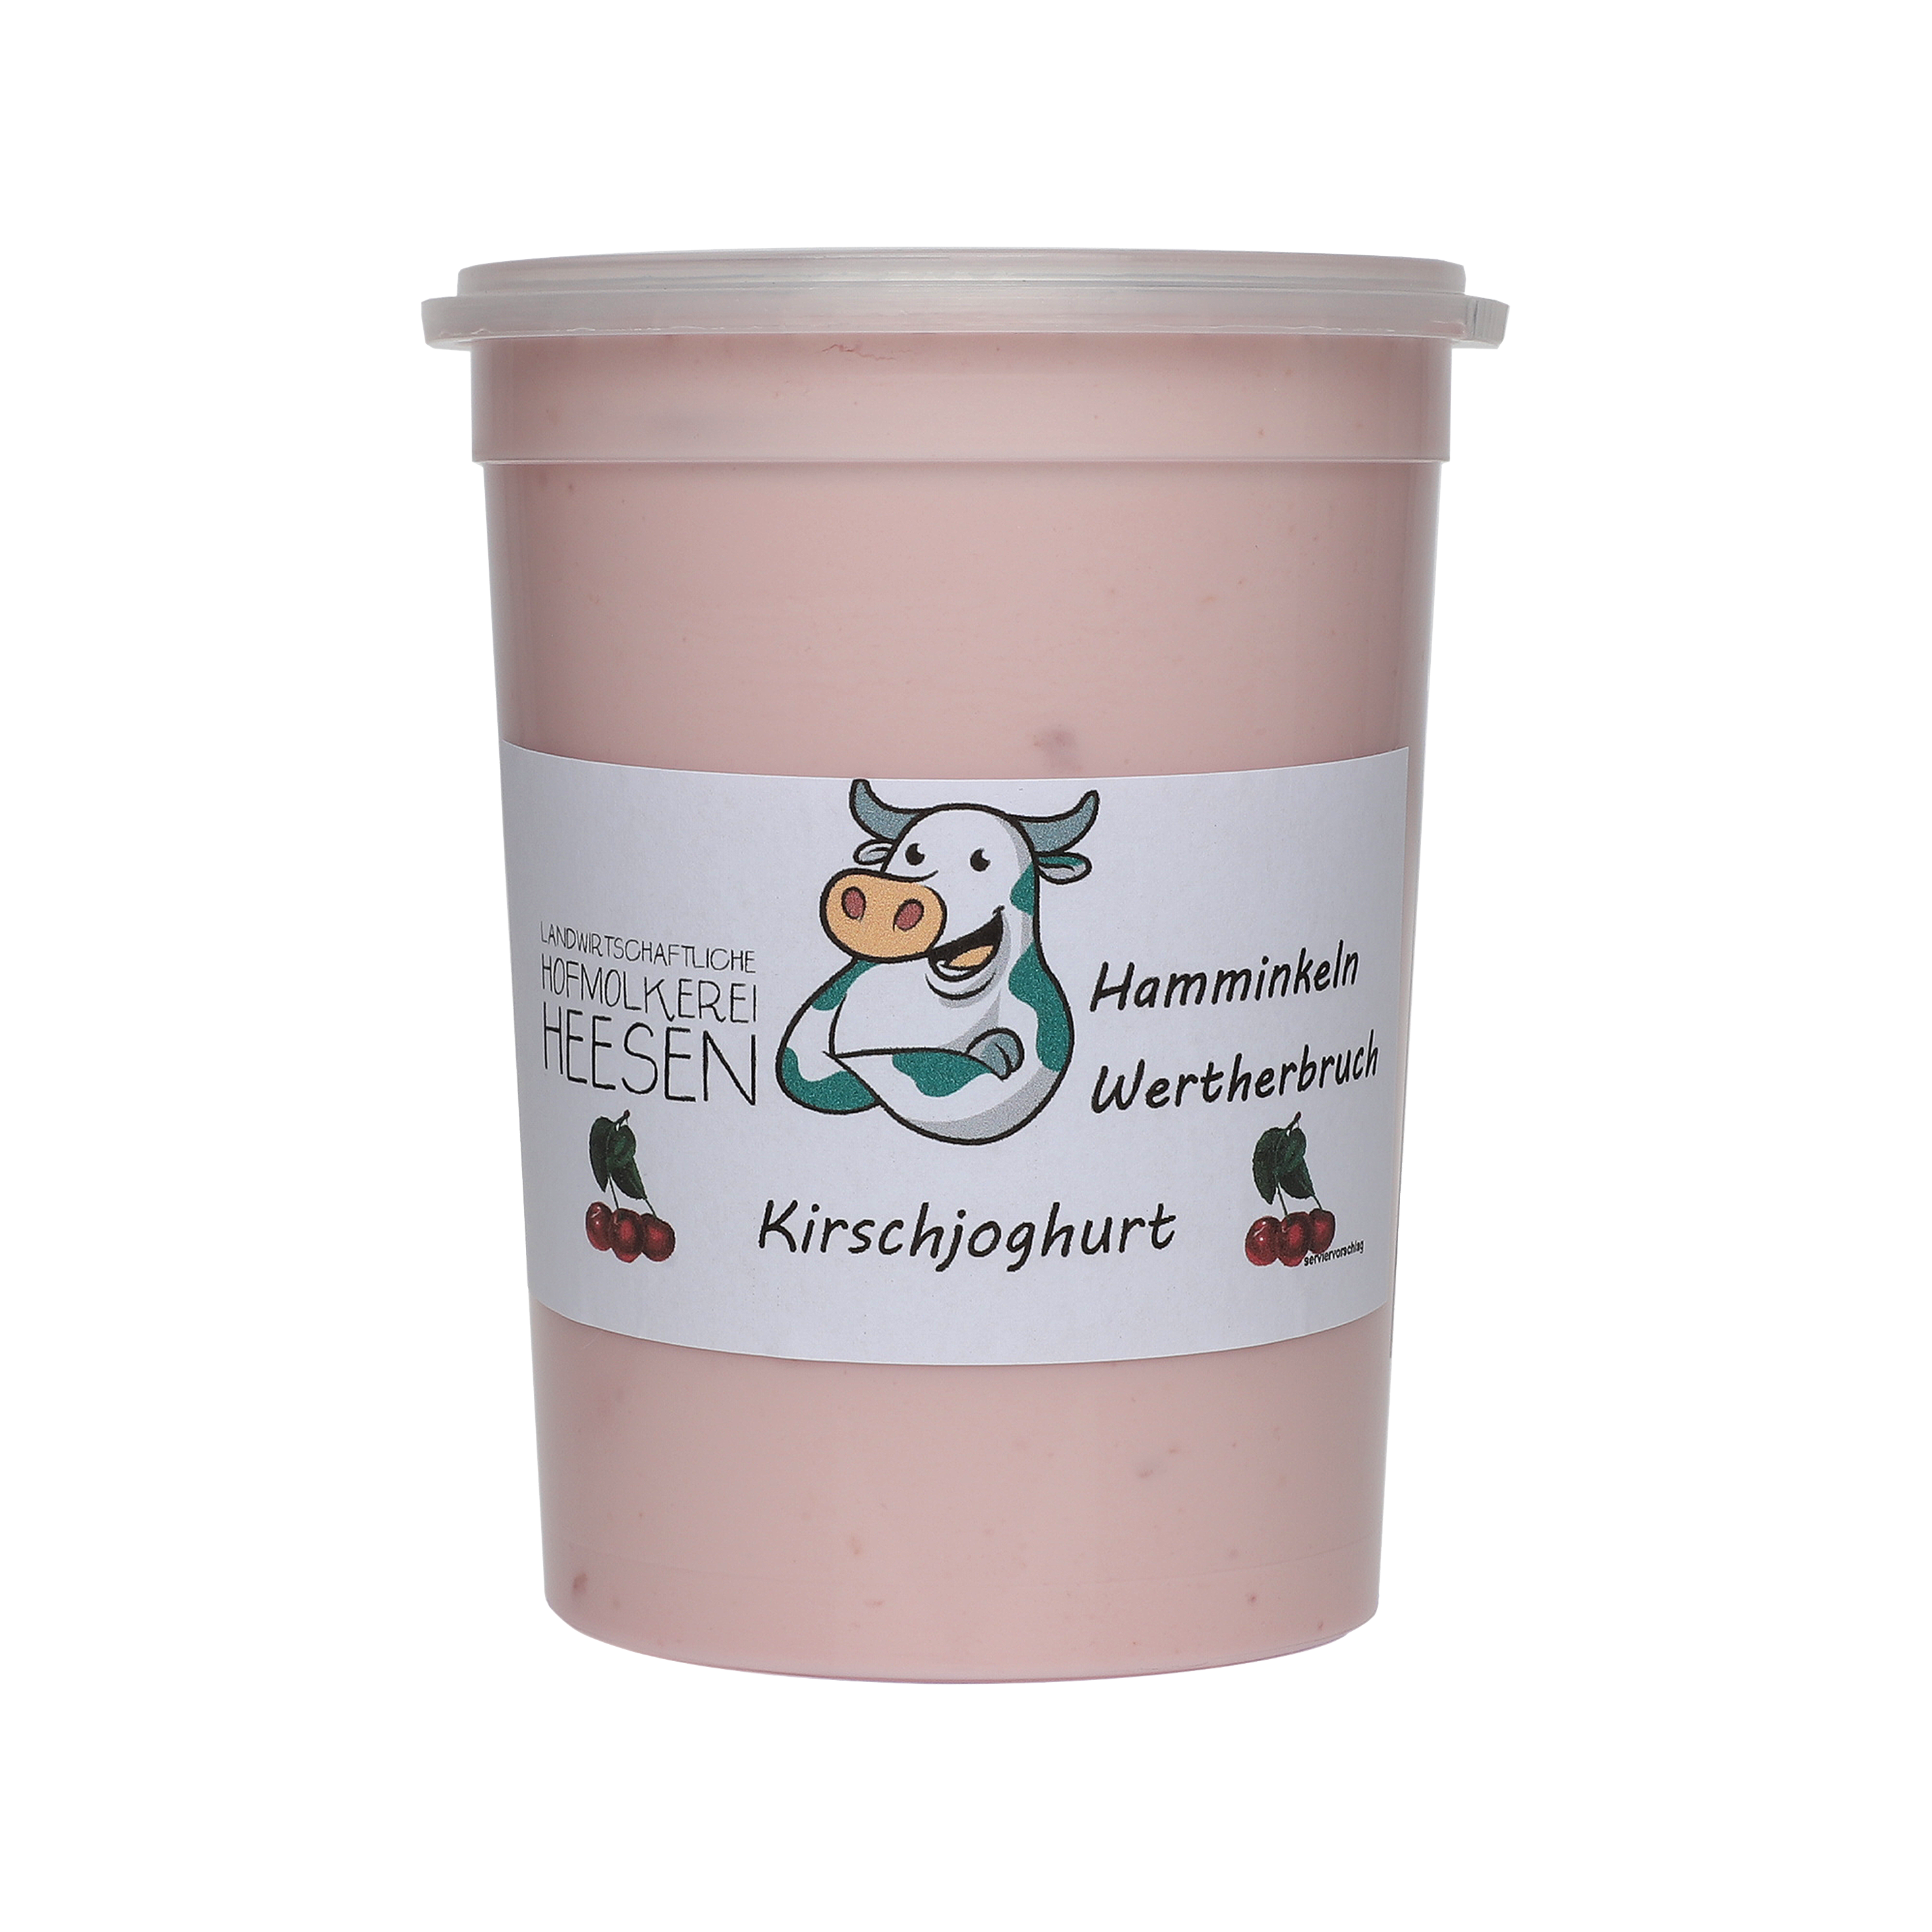 24_Milchhof Heesen 500g Kirsch Joghurt neu